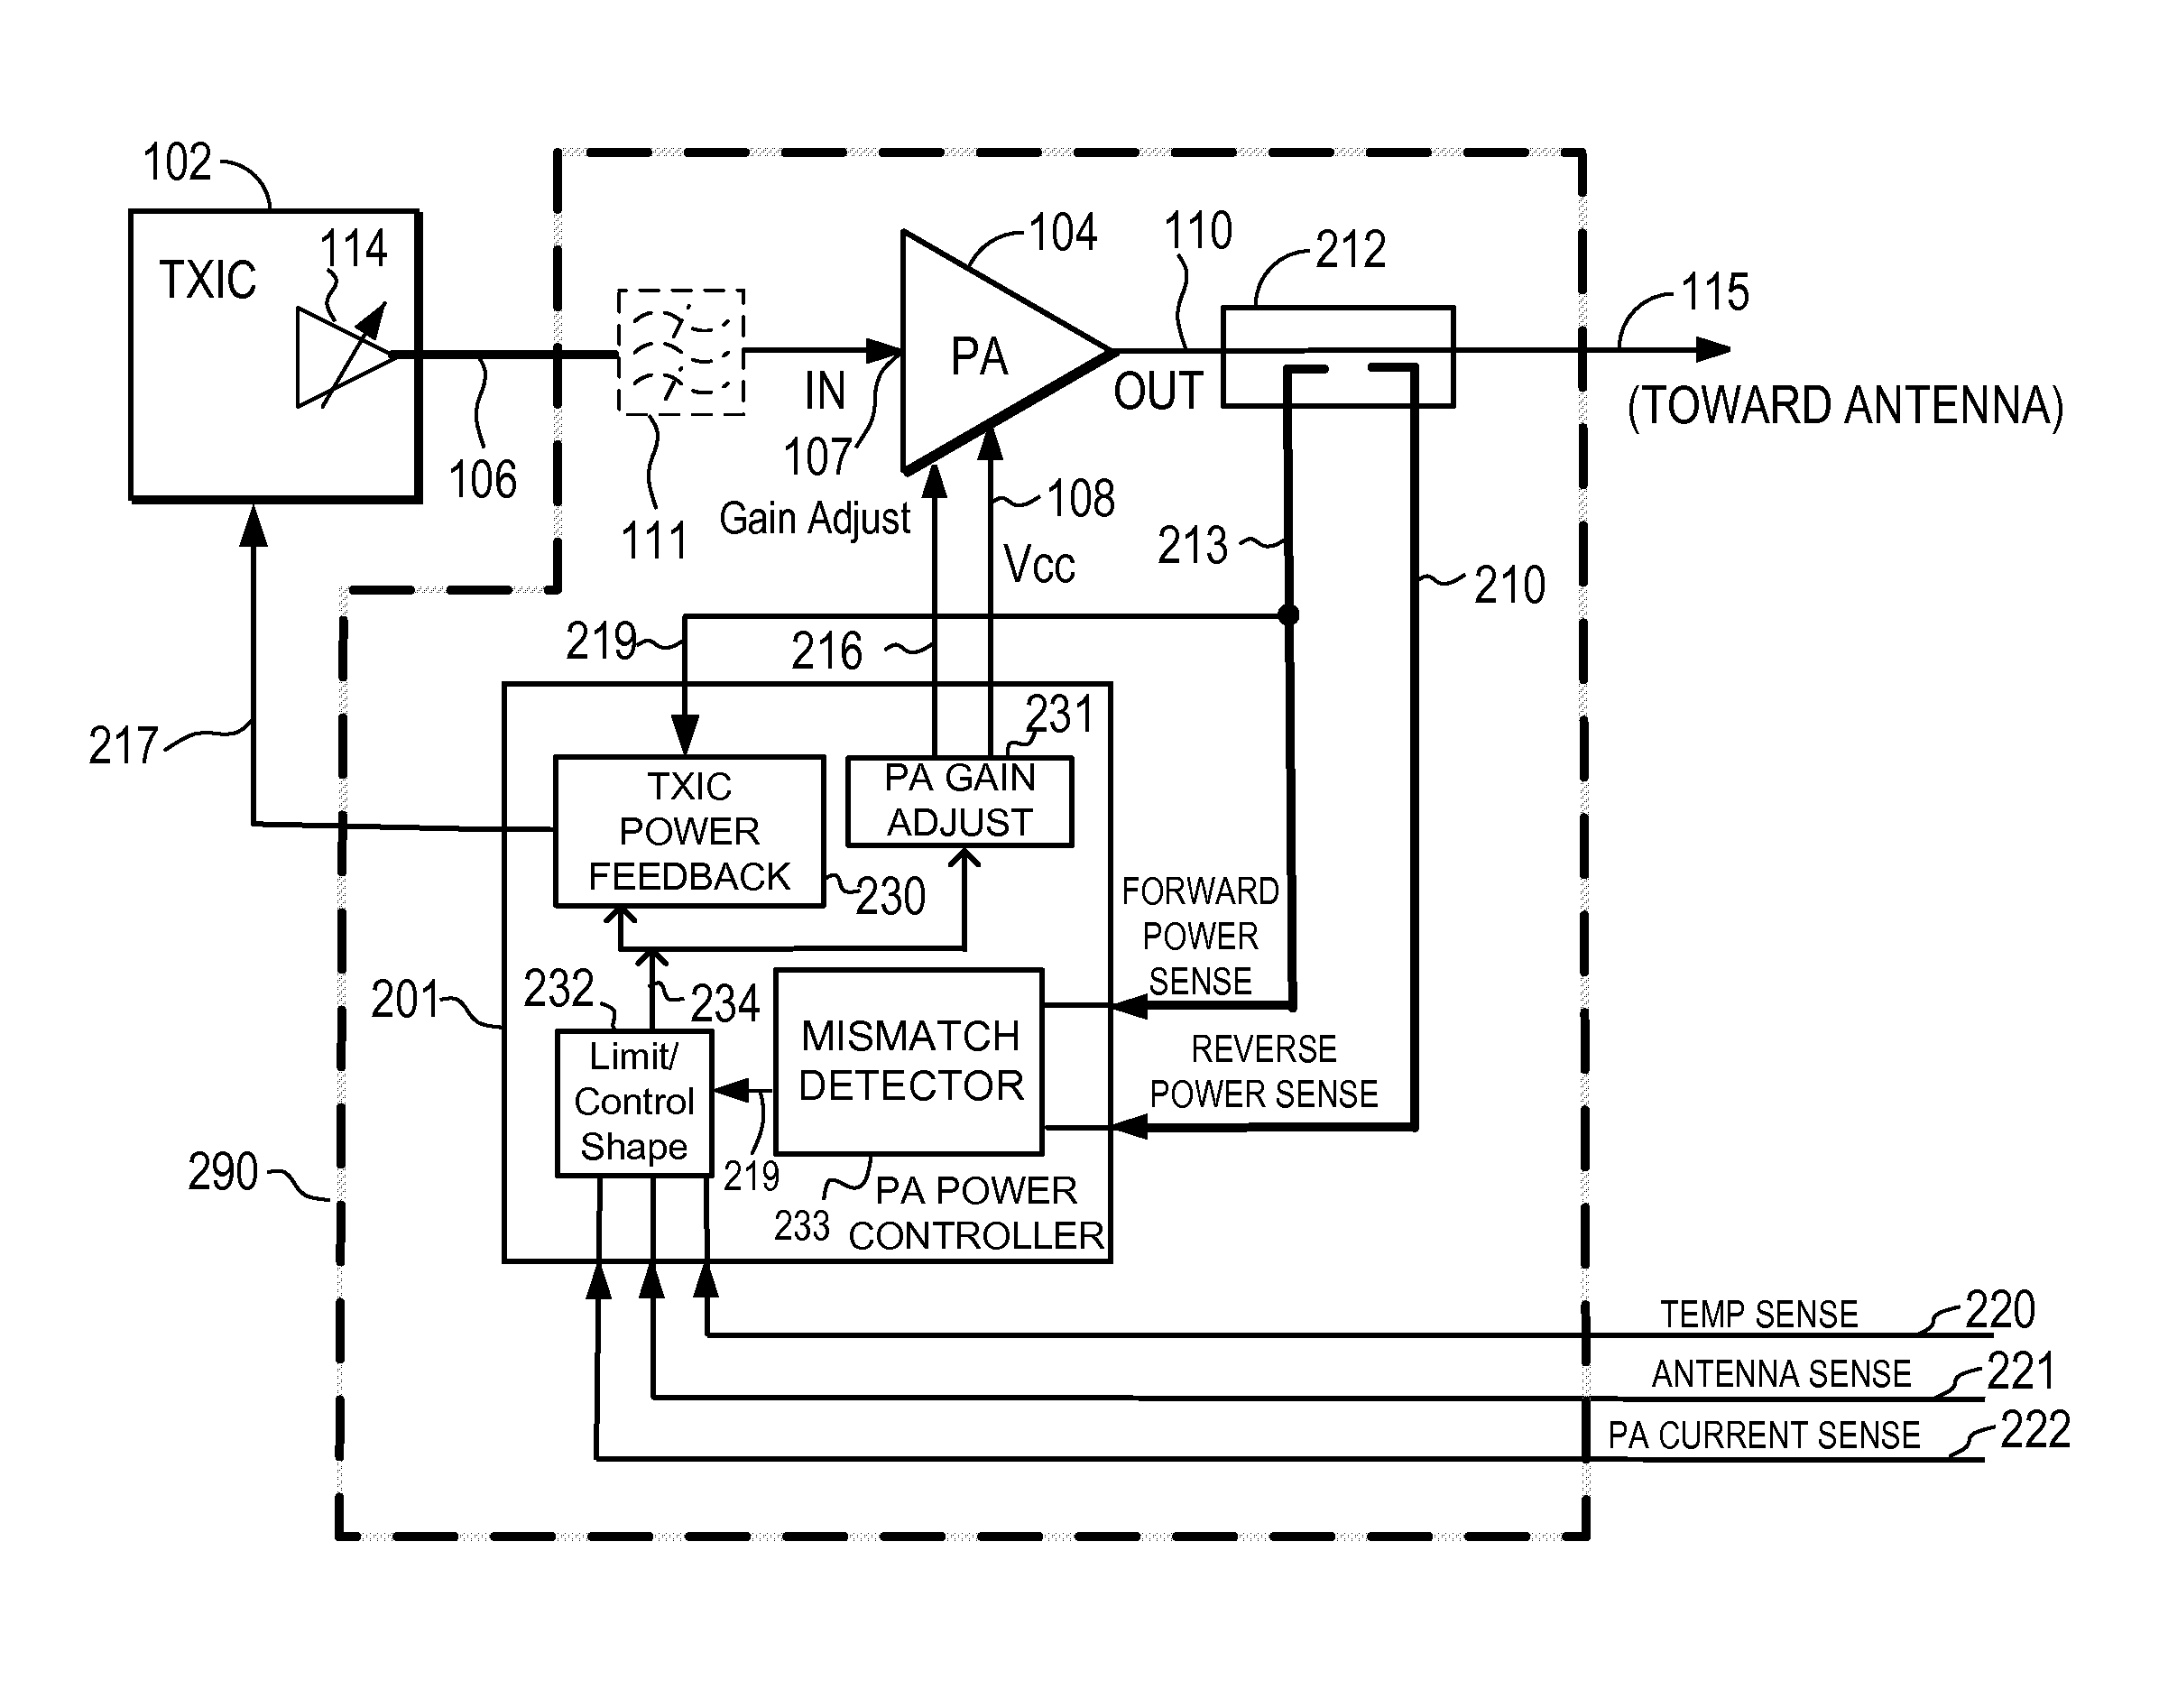 Power amplifier power controller